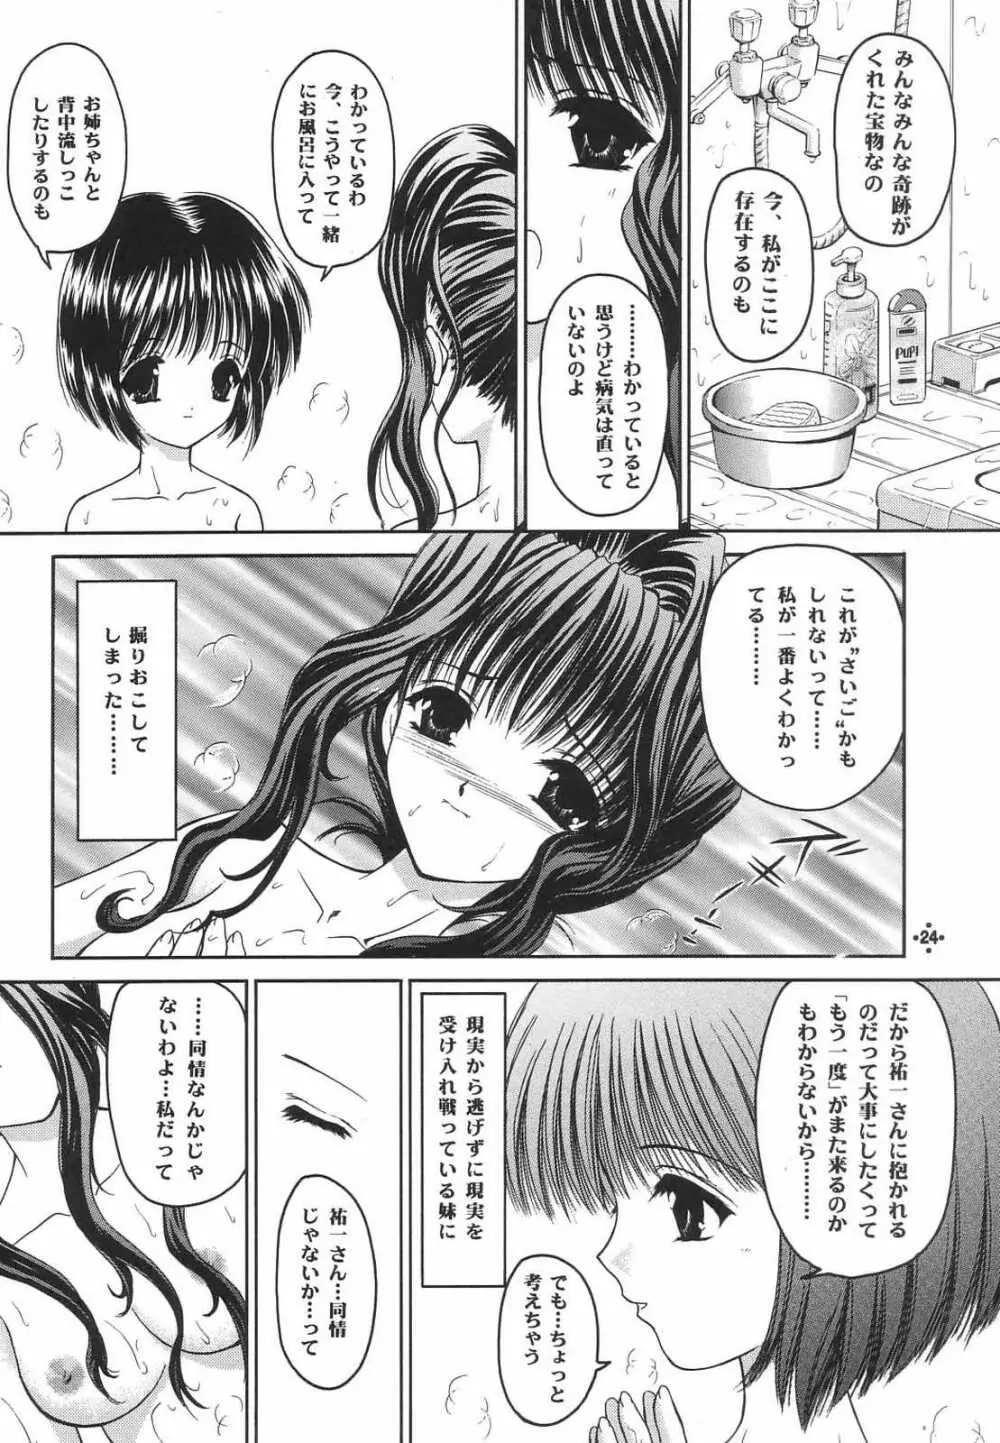 Shimensoka 8 23ページ